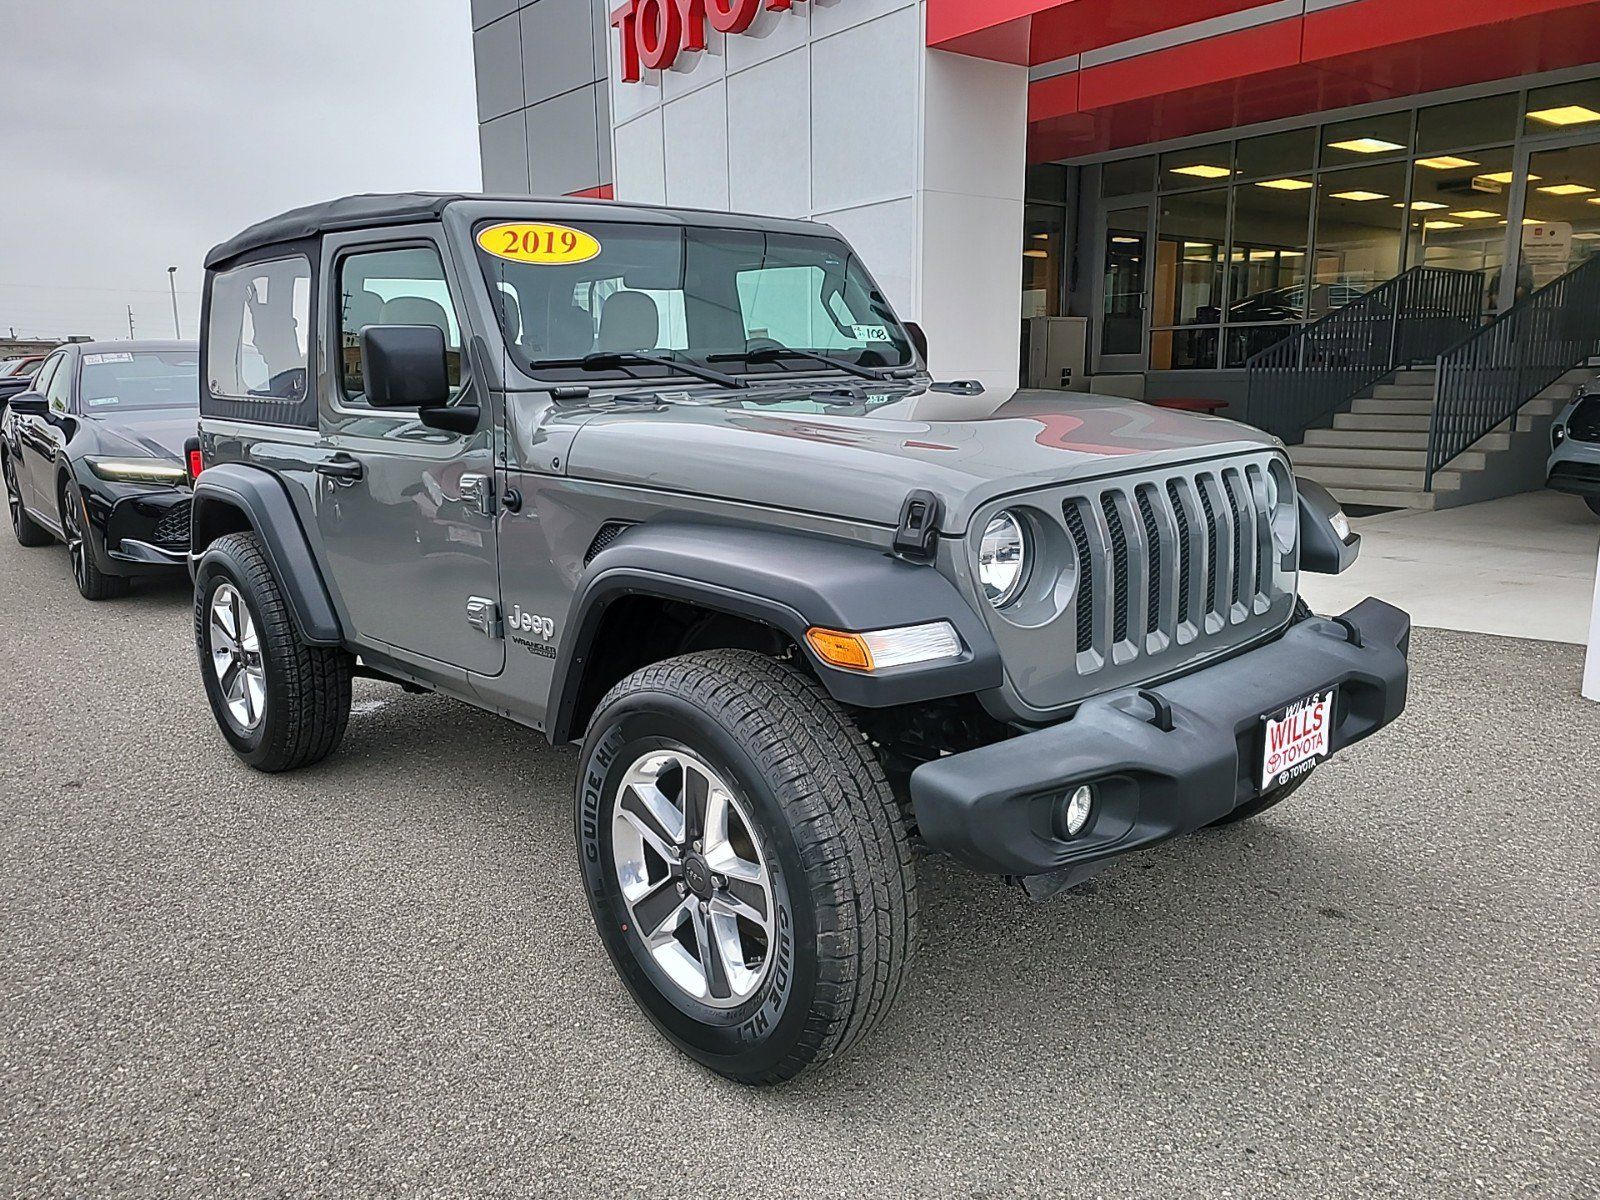 2019 - Jeep - Wrangler - $27,498